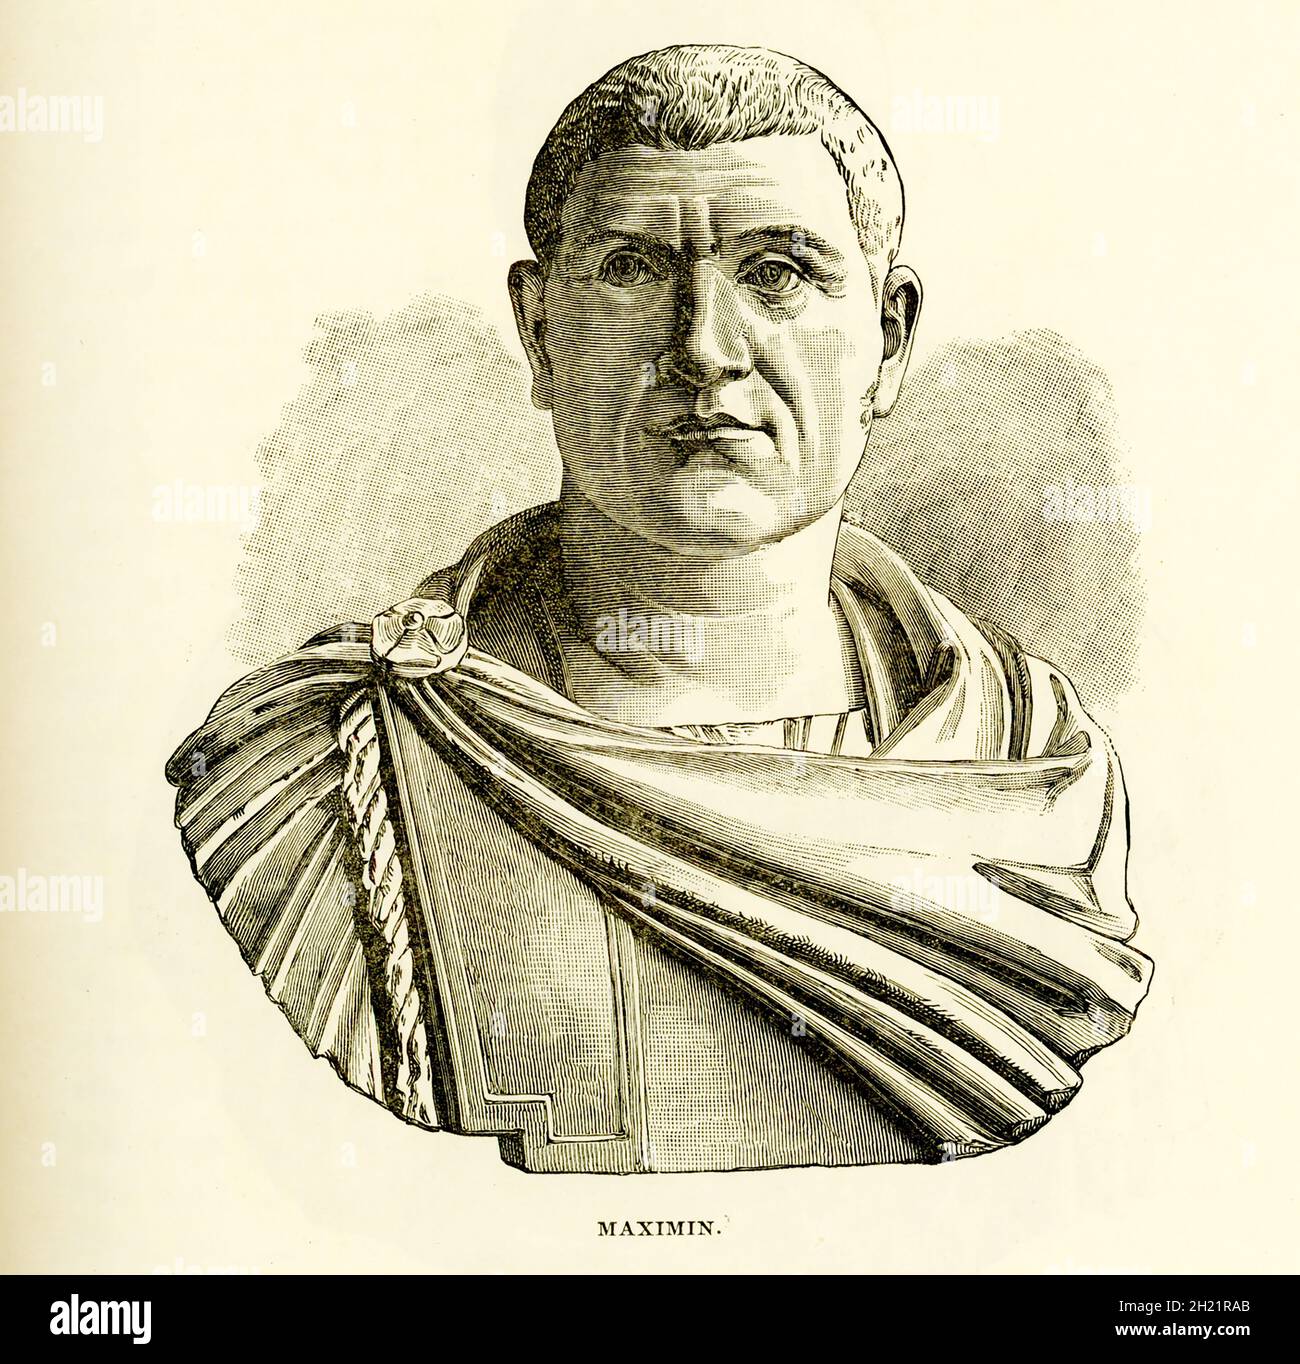 Gaius Julius Verus Maximinus 'Thrax' fu imperatore romano dal 235 al 238 d.C. Suo padre era un ragioniere nell'ufficio del governatore e proveniva dagli antenati Carpi, un popolo che Diocleziano alla fine avrebbe passato dalla loro antica dimora e trasferito a Pannonia. Questa illustrazione è del busto ospitato nel Museo del Louvre. Foto Stock